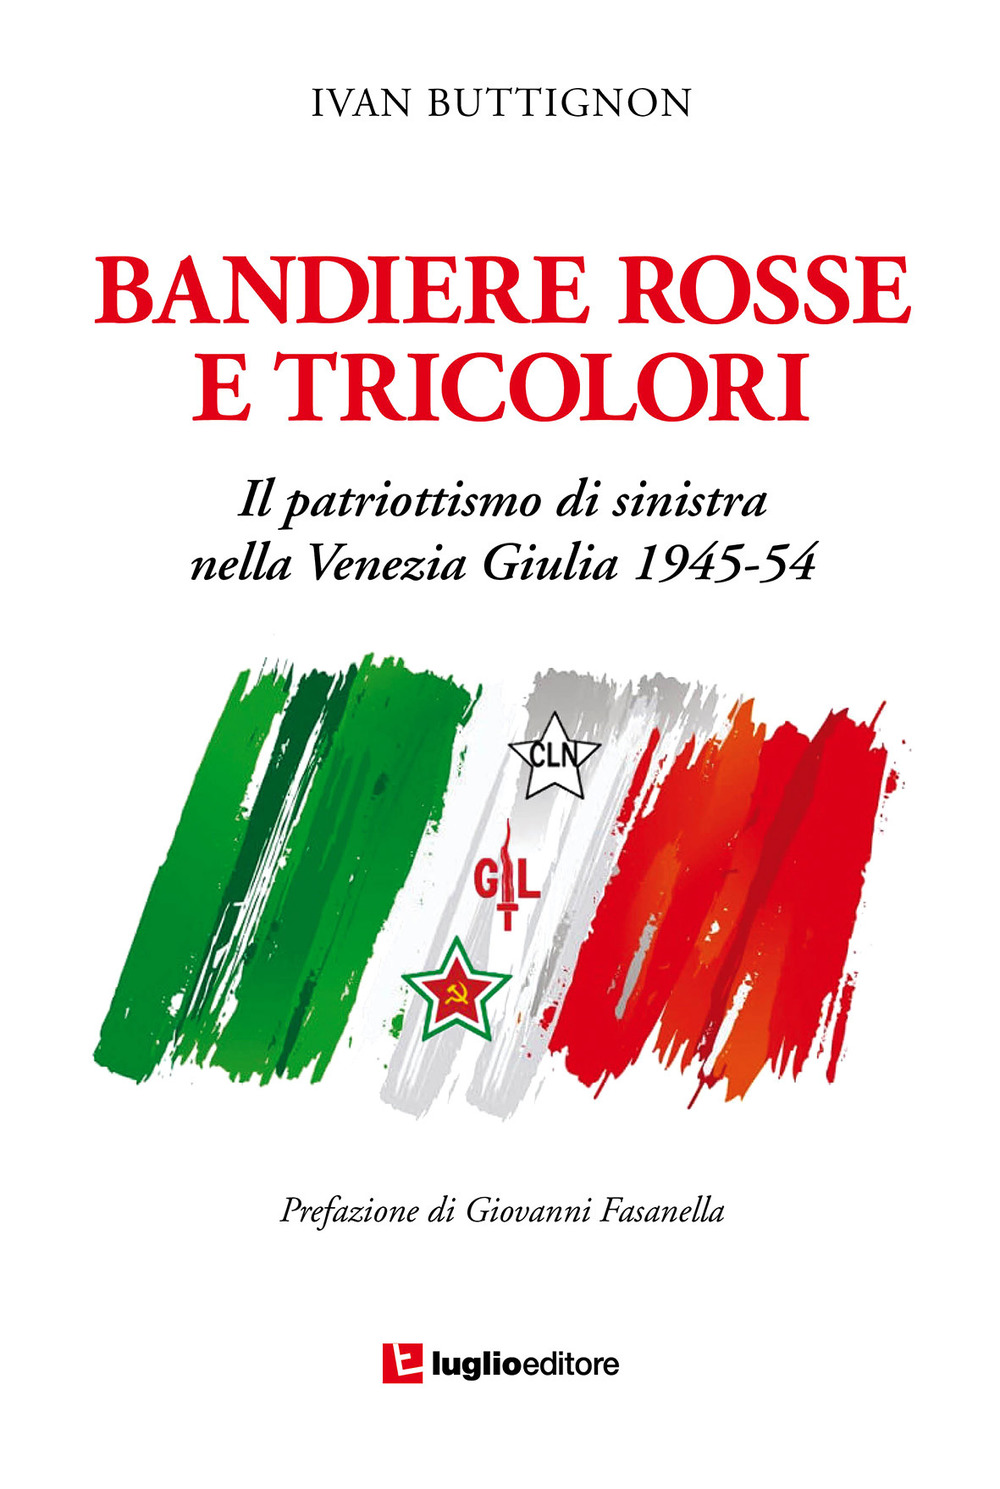 Bandiere rosse e tricolori. Il patriottismo di sinistra nella Venezia Giulia 1945-54